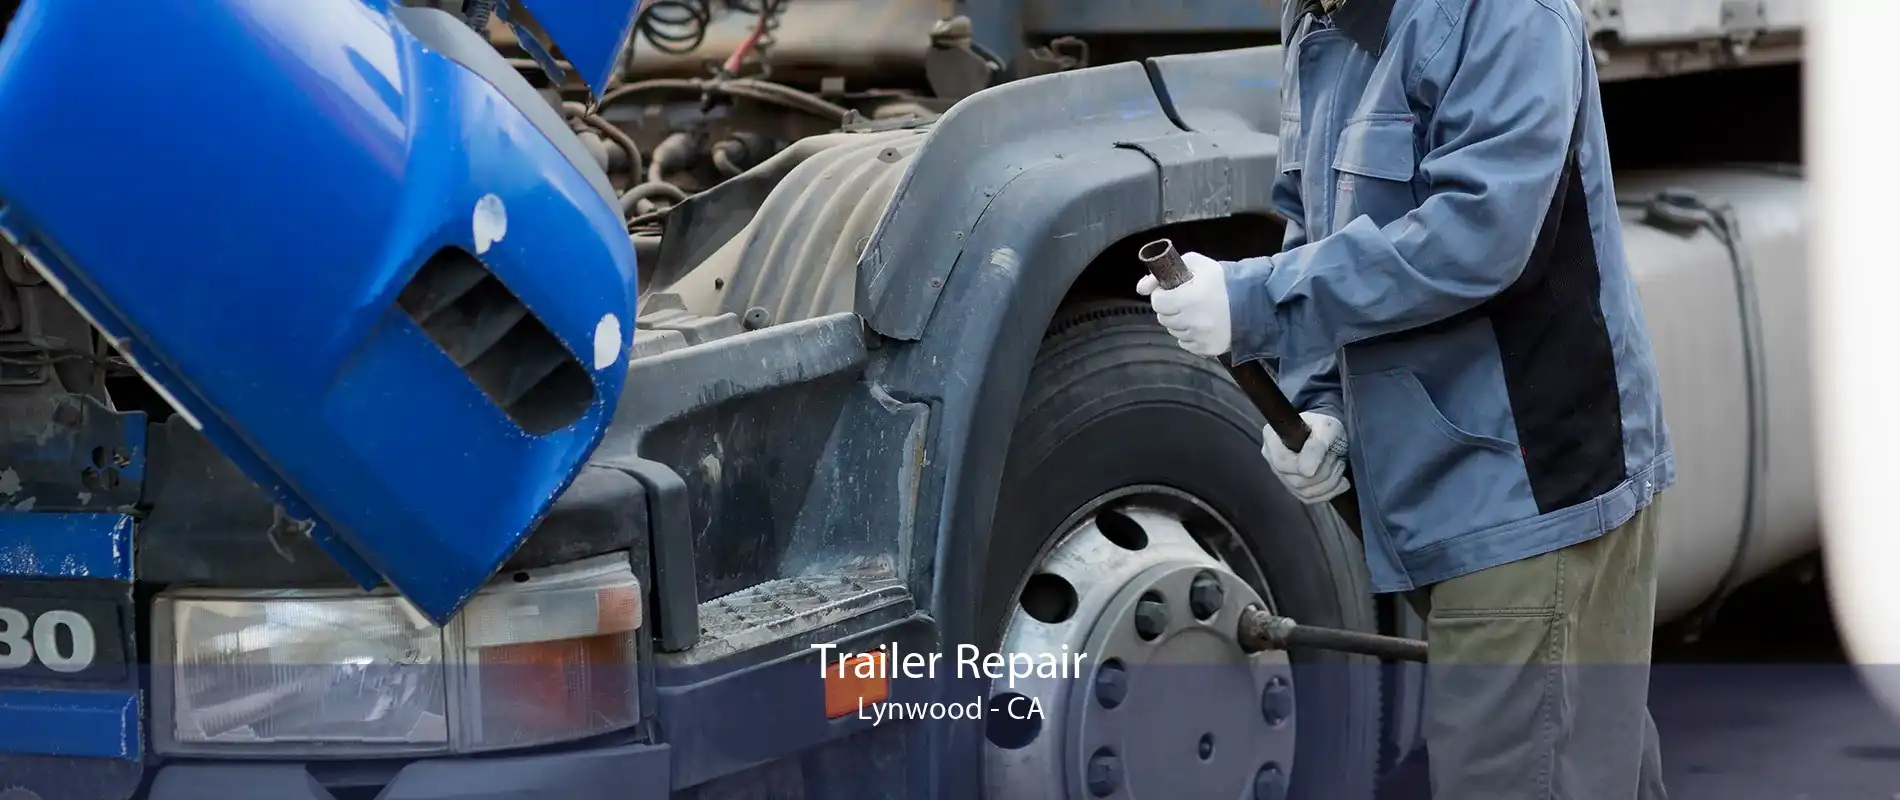 Trailer Repair Lynwood - CA